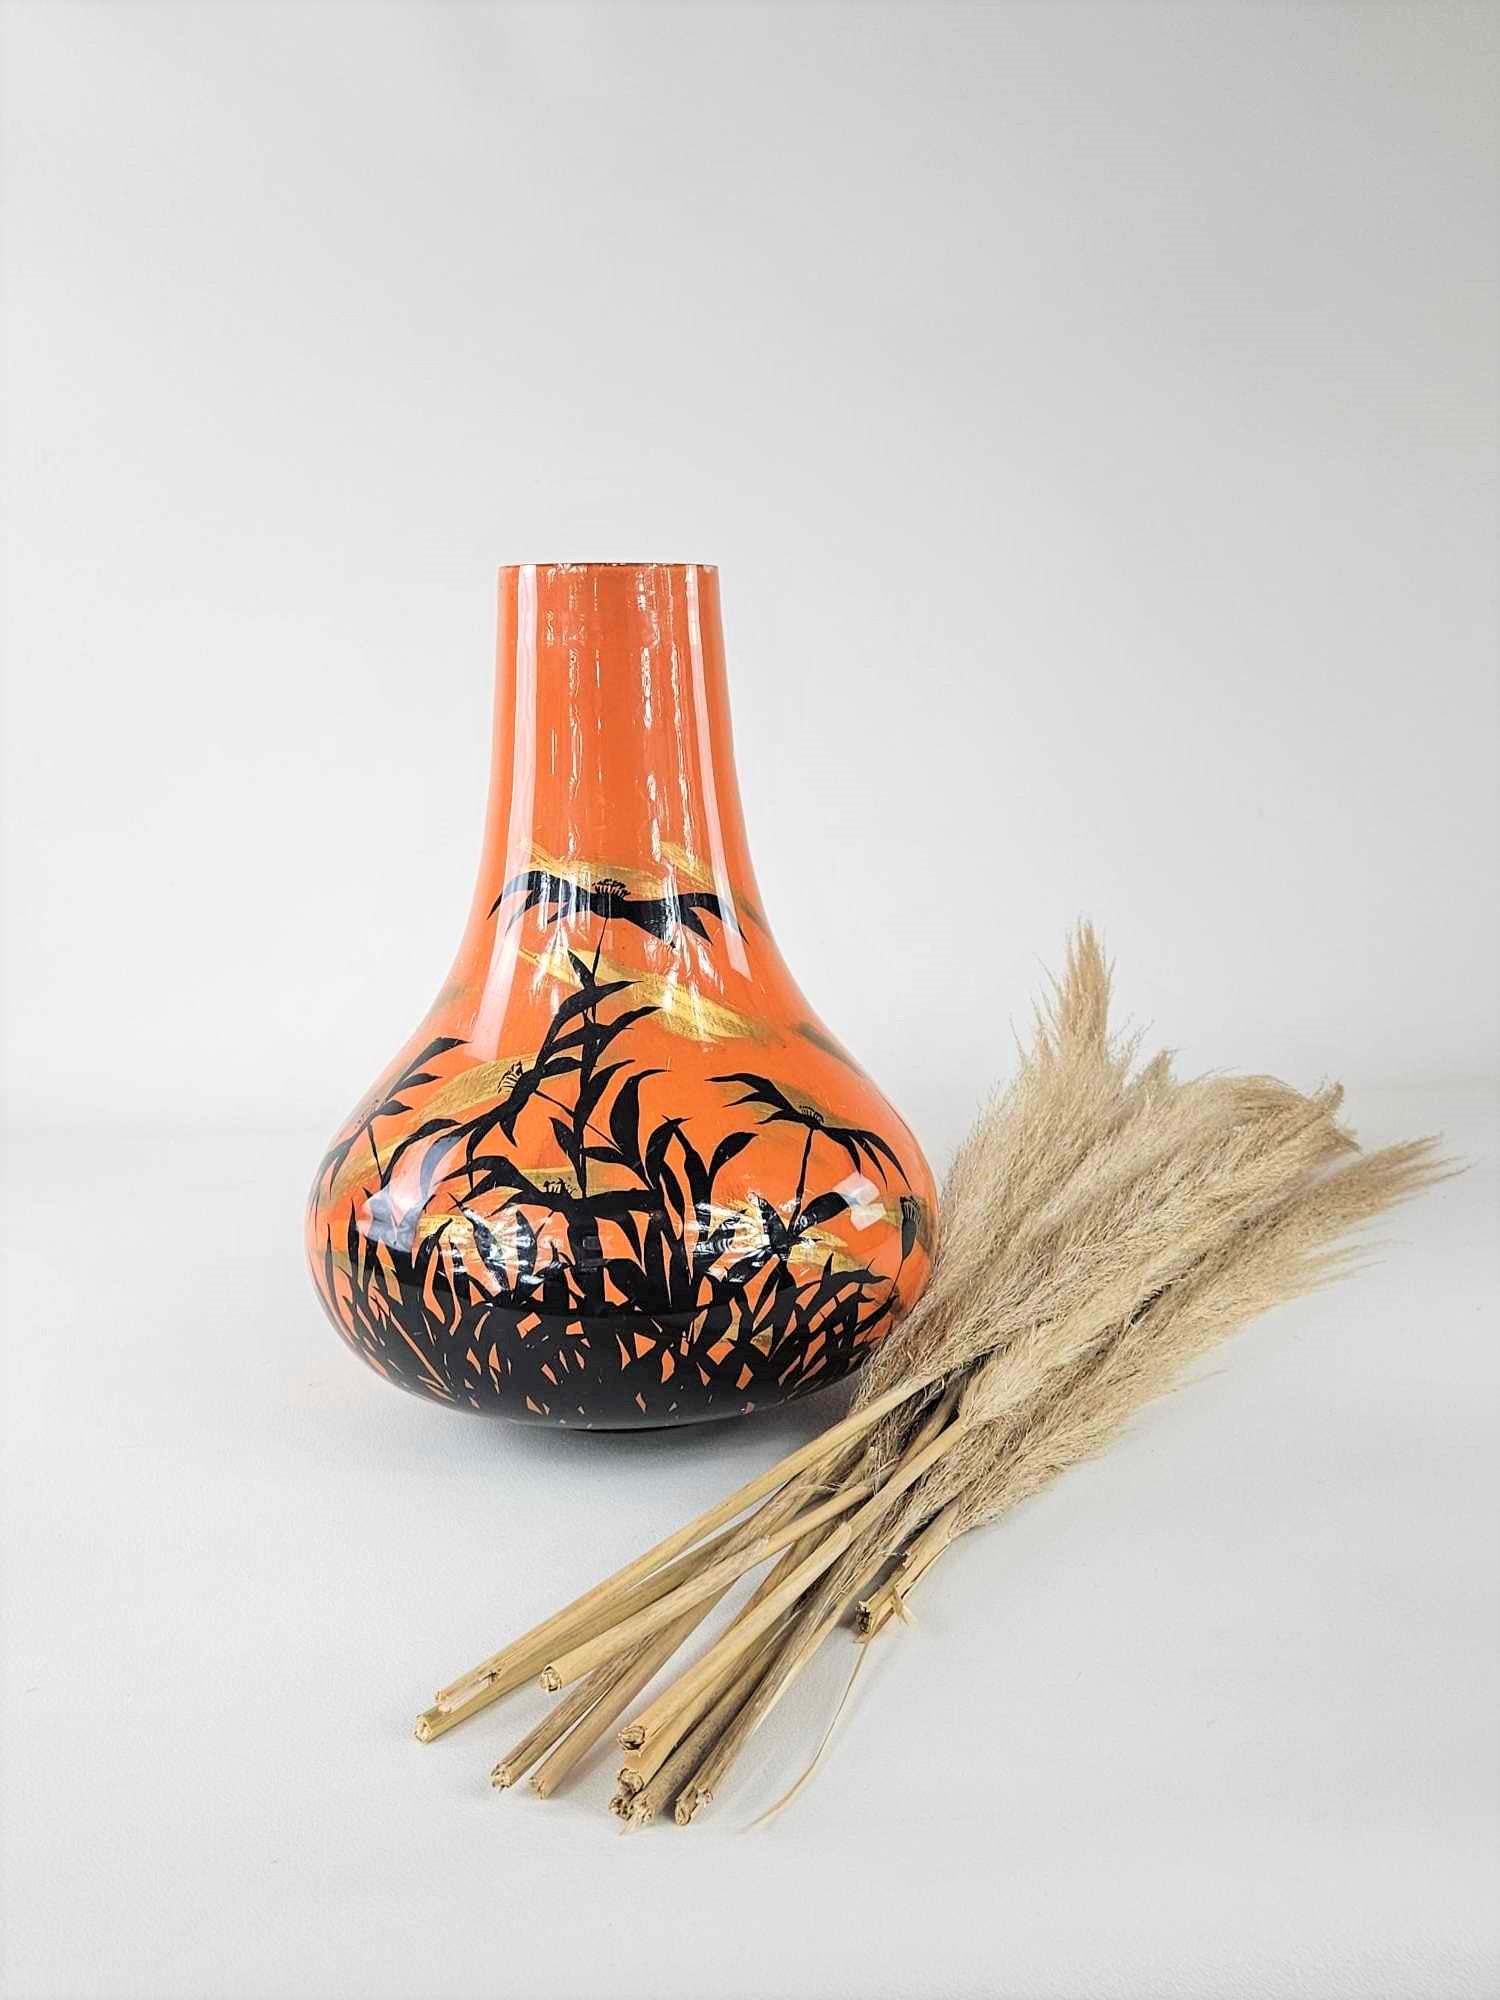 Vase laqué de motifs floraux japonisants, circa 1970